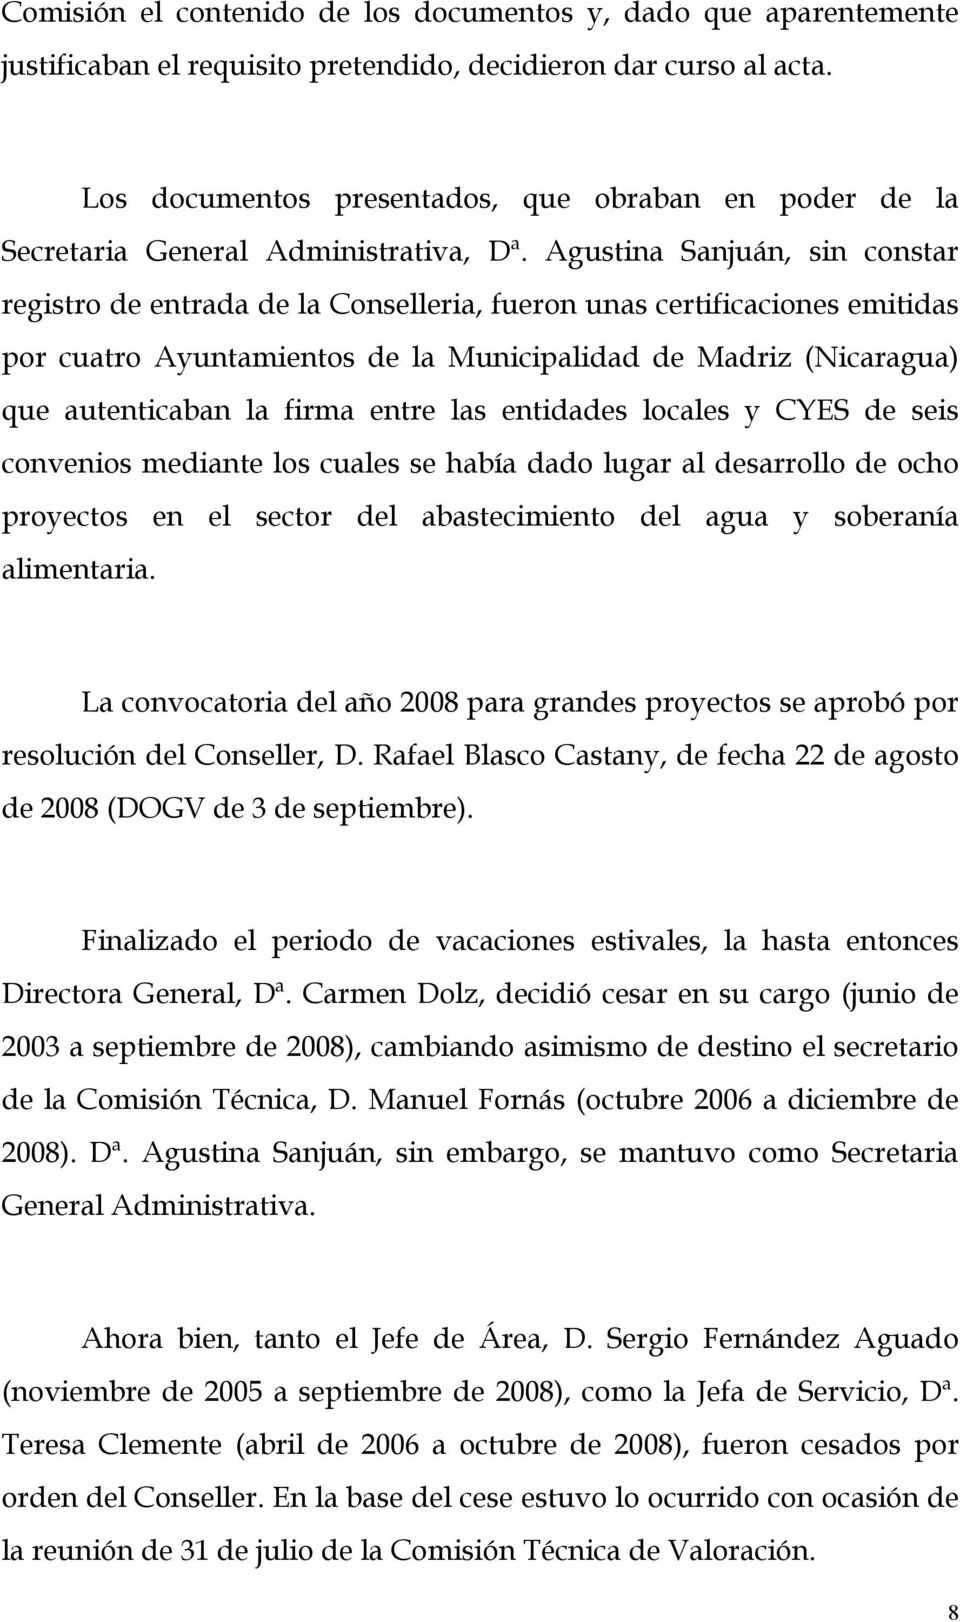 Agustina Sanjuán, sin constar registro de entrada de la Conselleria, fueron unas certificaciones emitidas por cuatro Ayuntamientos de la Municipalidad de Madriz (Nicaragua) que autenticaban la firma